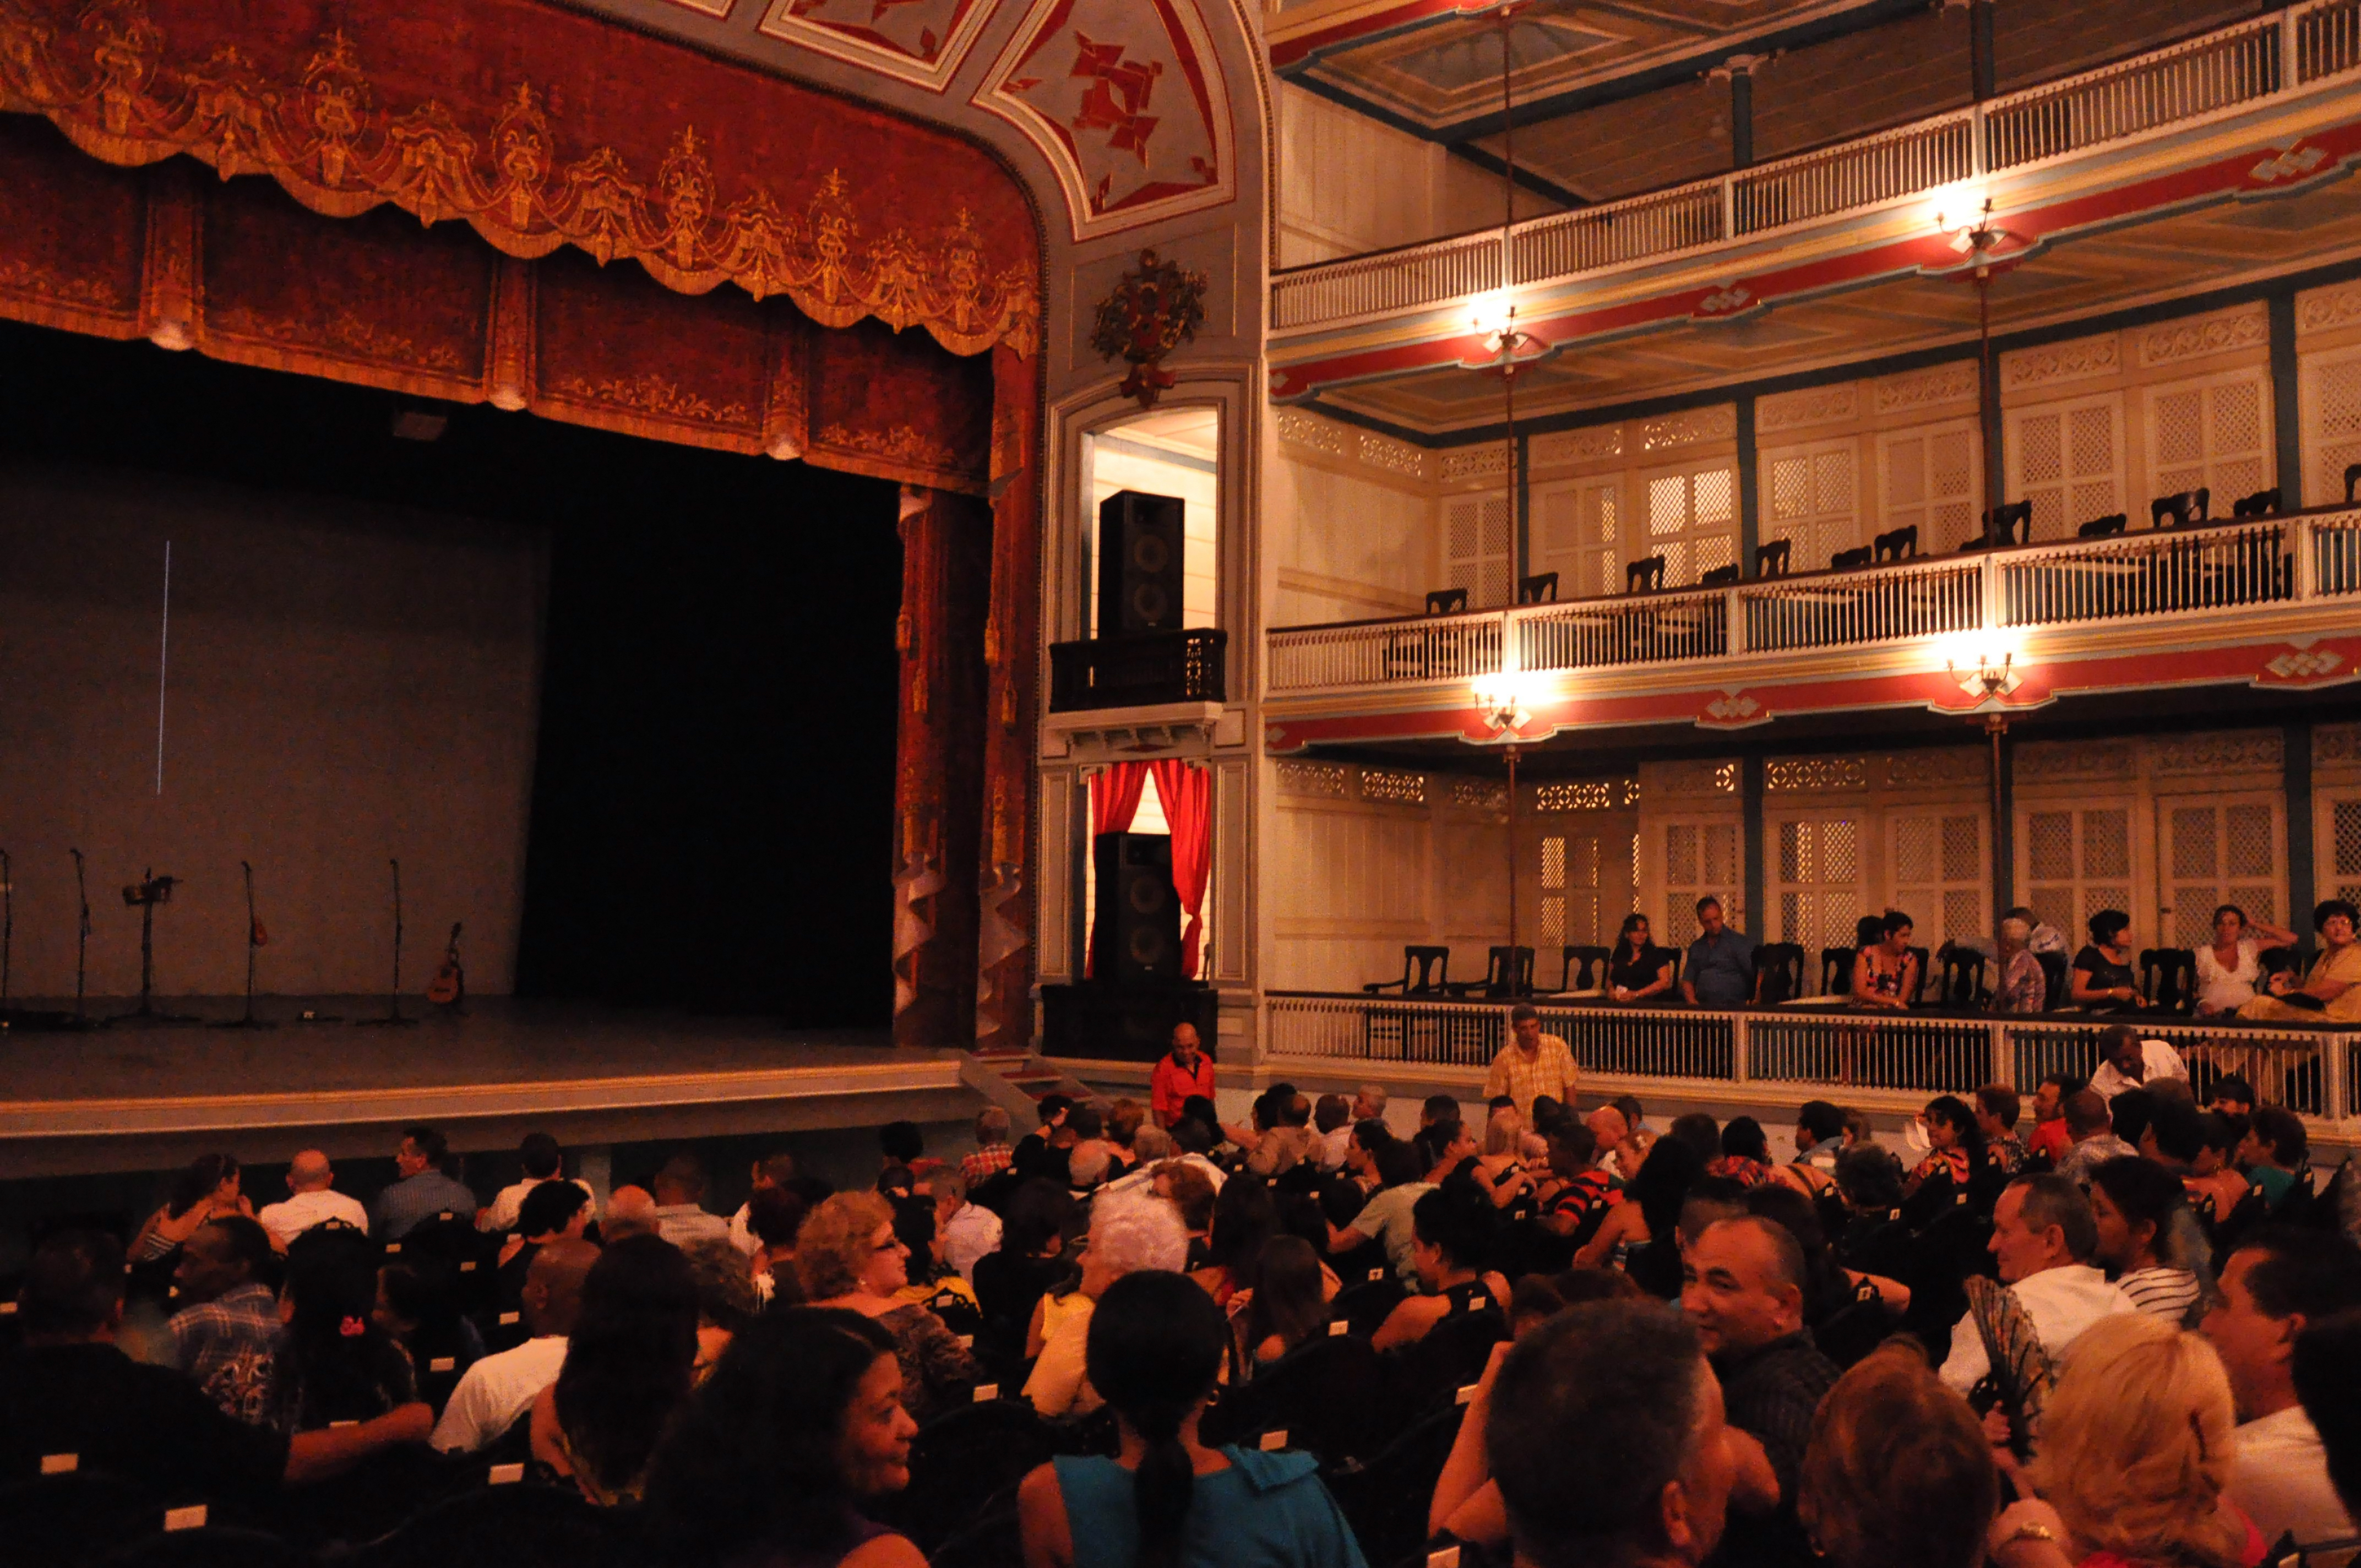 Theatre La Caridad in Santa Clara.